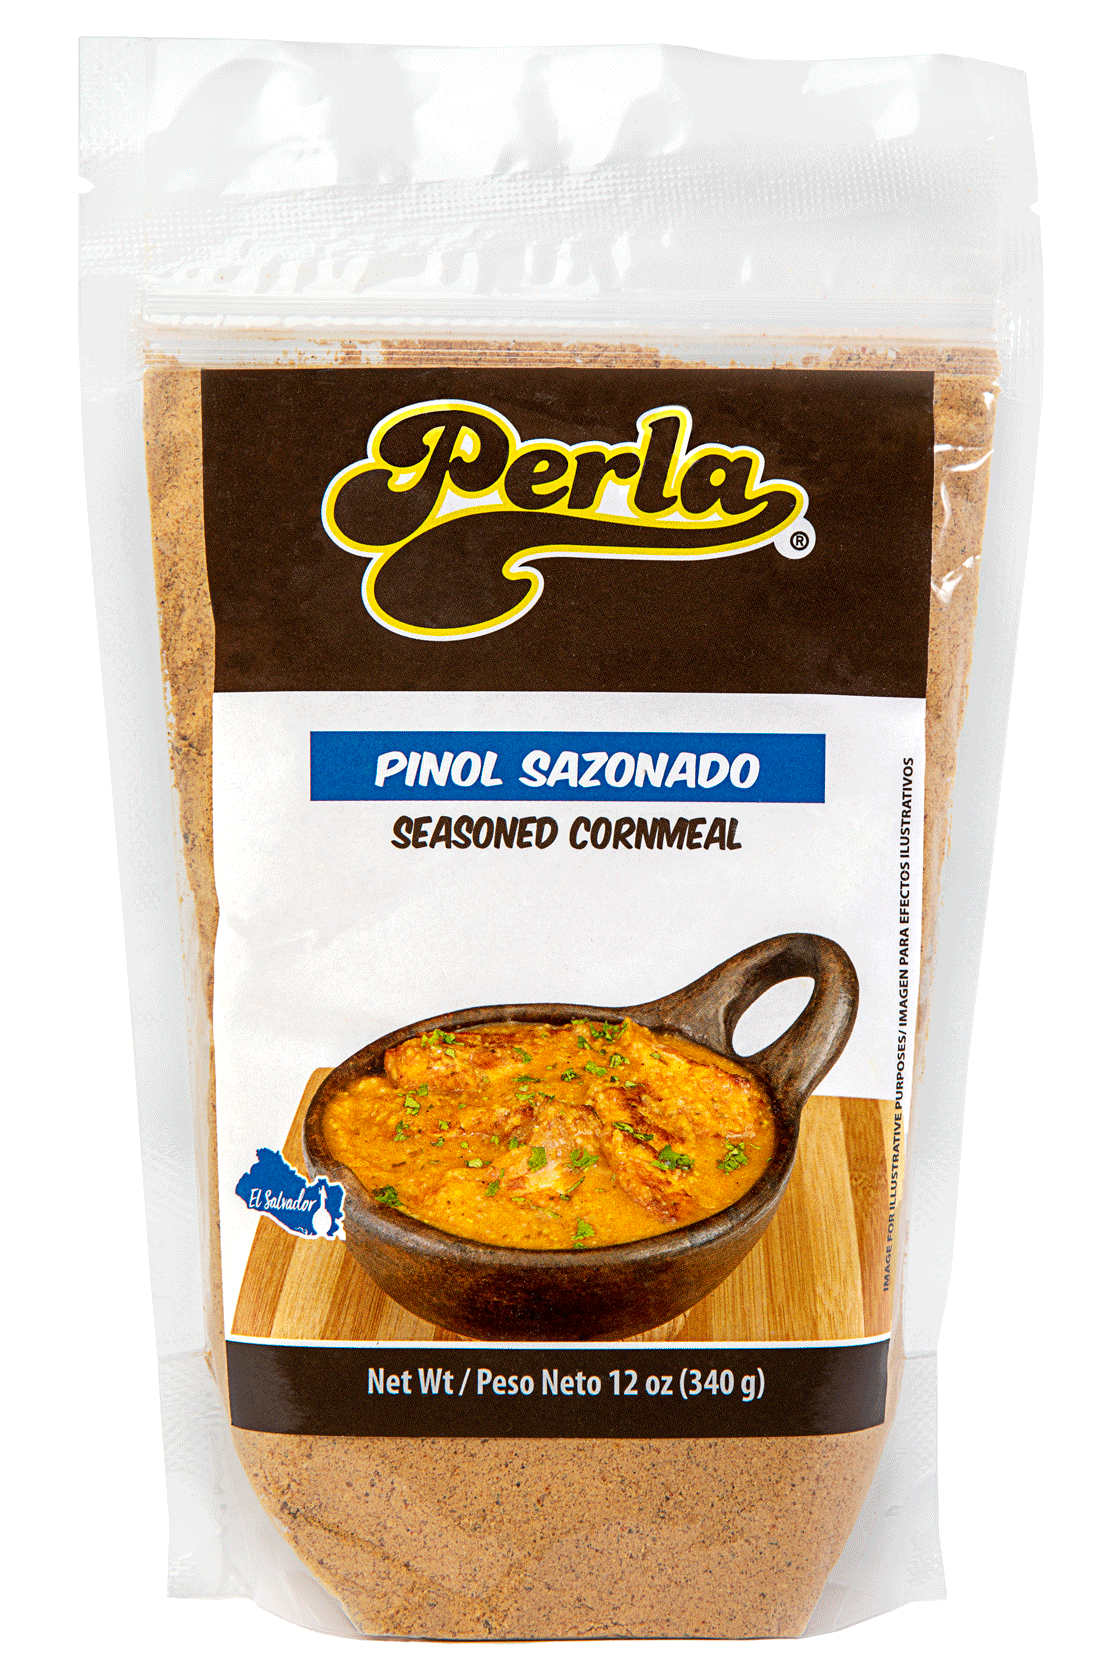 Perla Pinol Sazonado (Seasoned Cornmeal) 12 oz